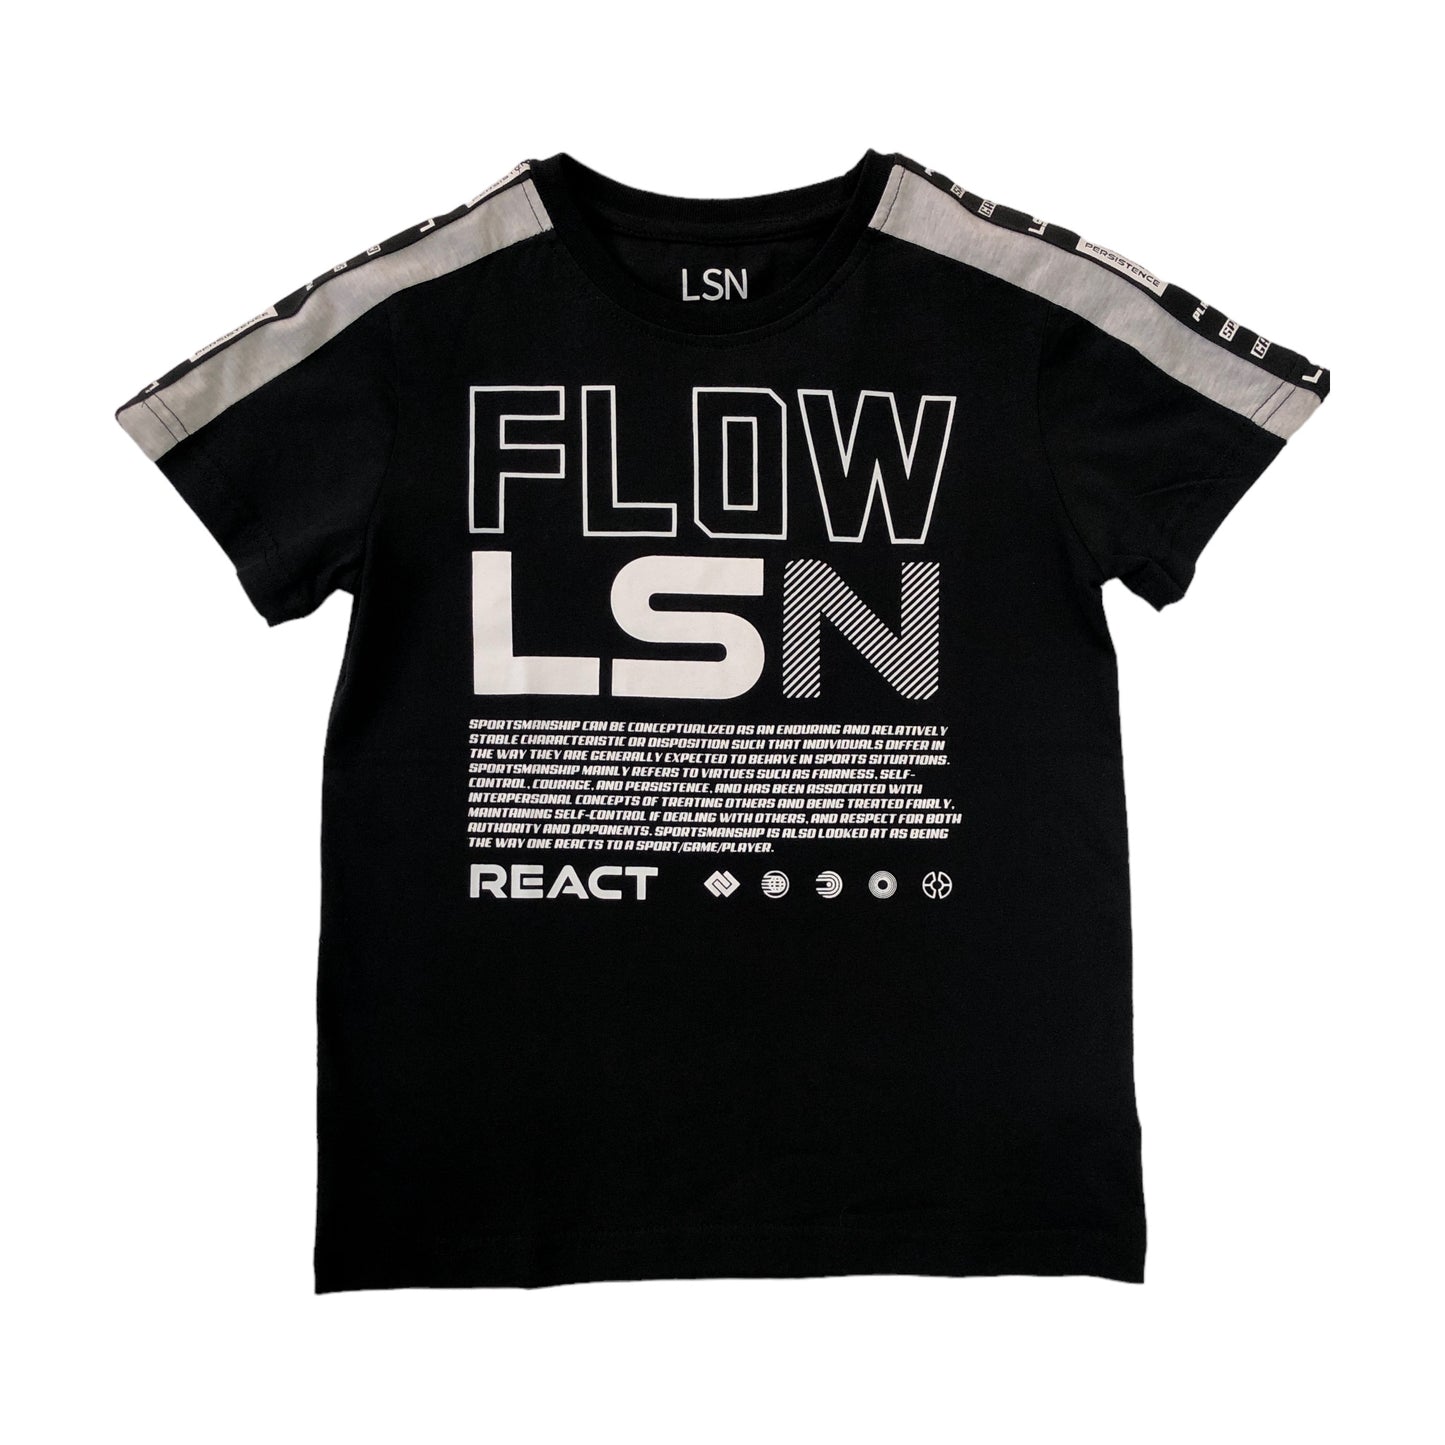 Playera "FLOW LSN" para niño Losan